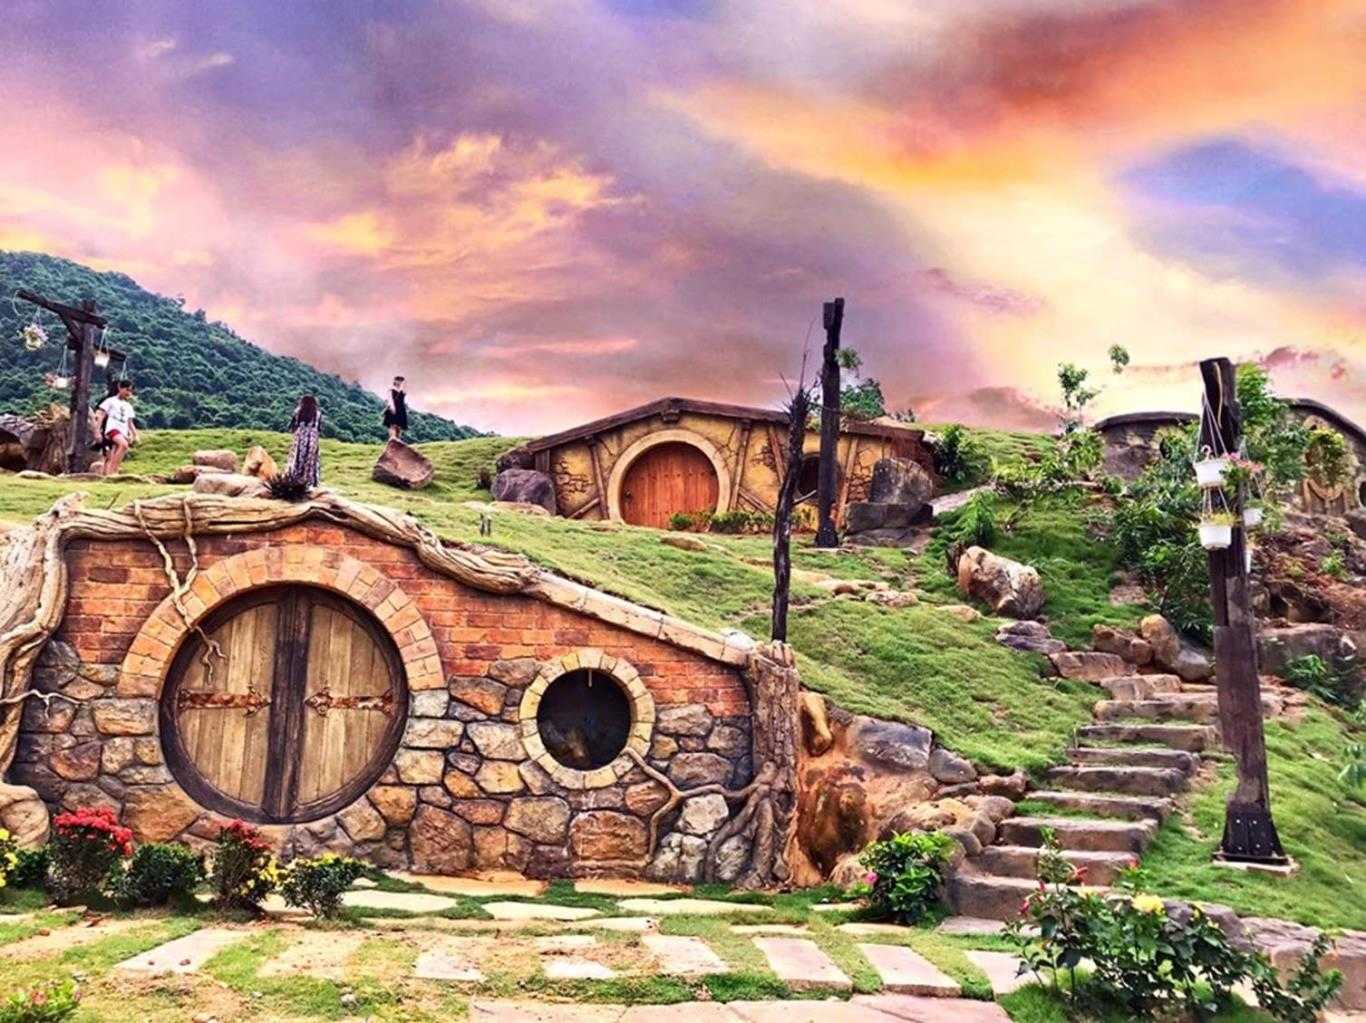 Khu du lịch Bạch Mã Village bê nguyên bối cảnh làng Hobbit trong phim